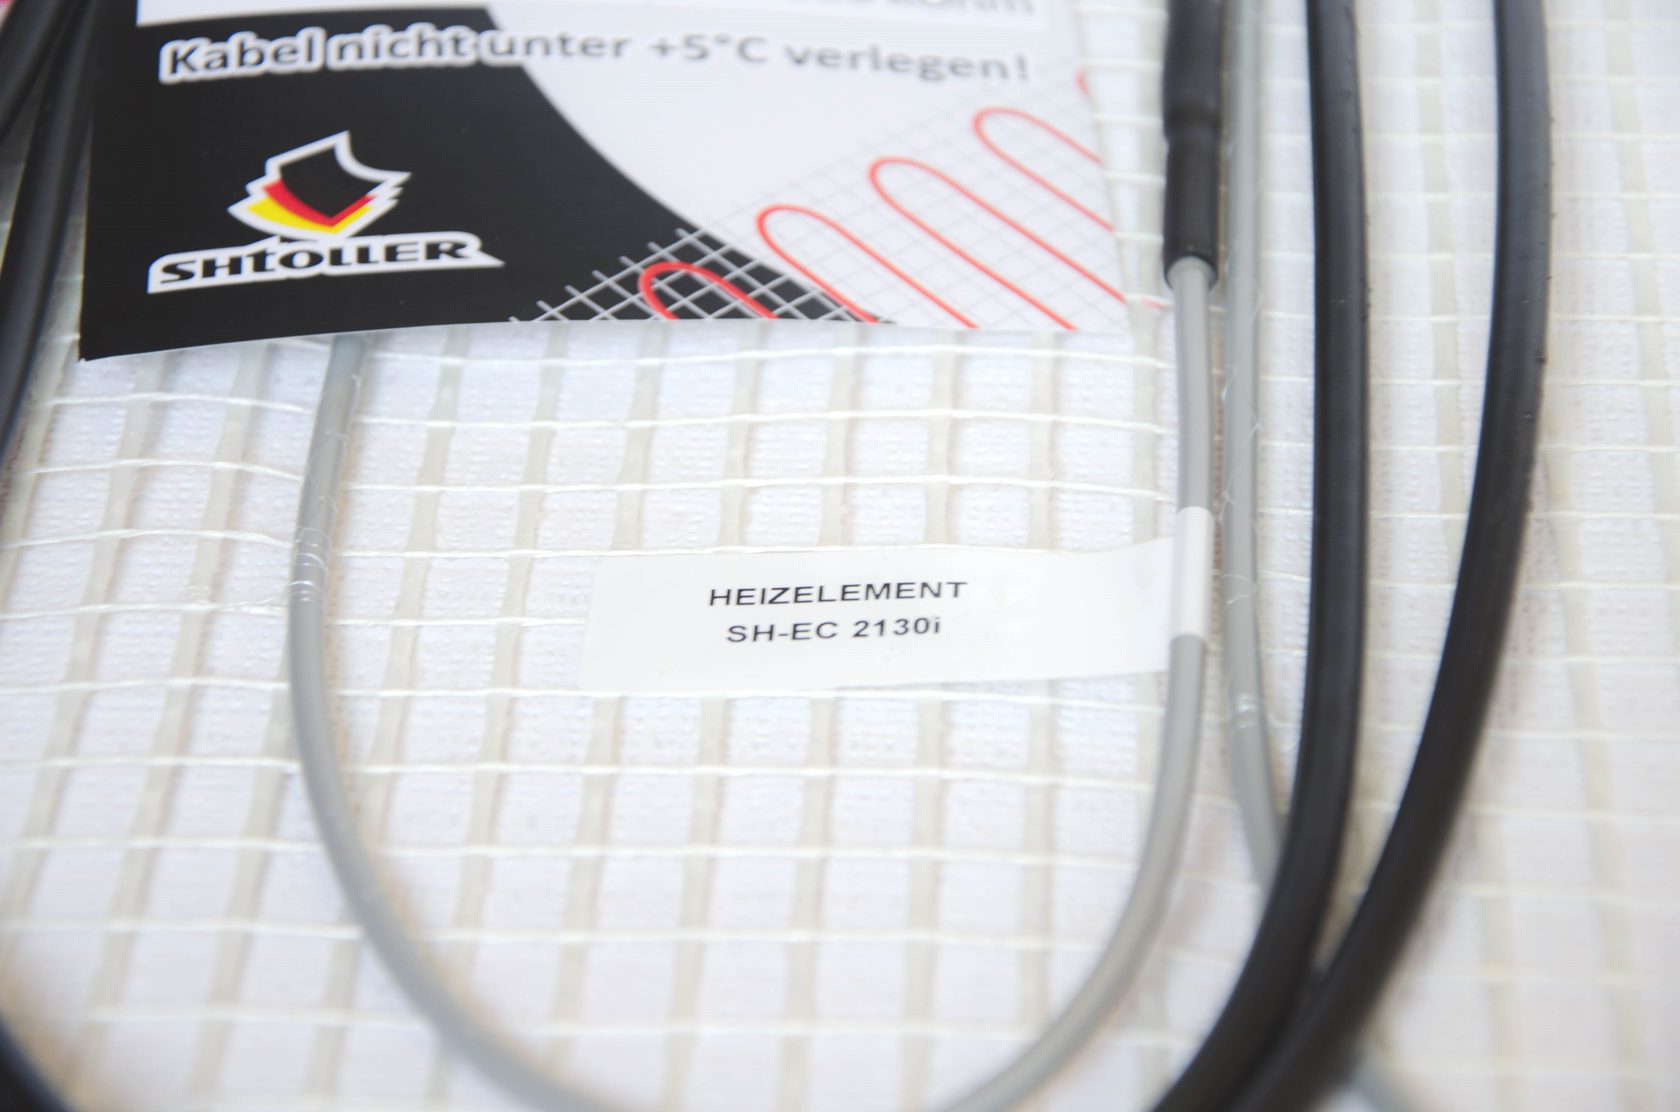 Електрична тепла підлога Shtoller SH-EC 2120i відгуки - зображення 5